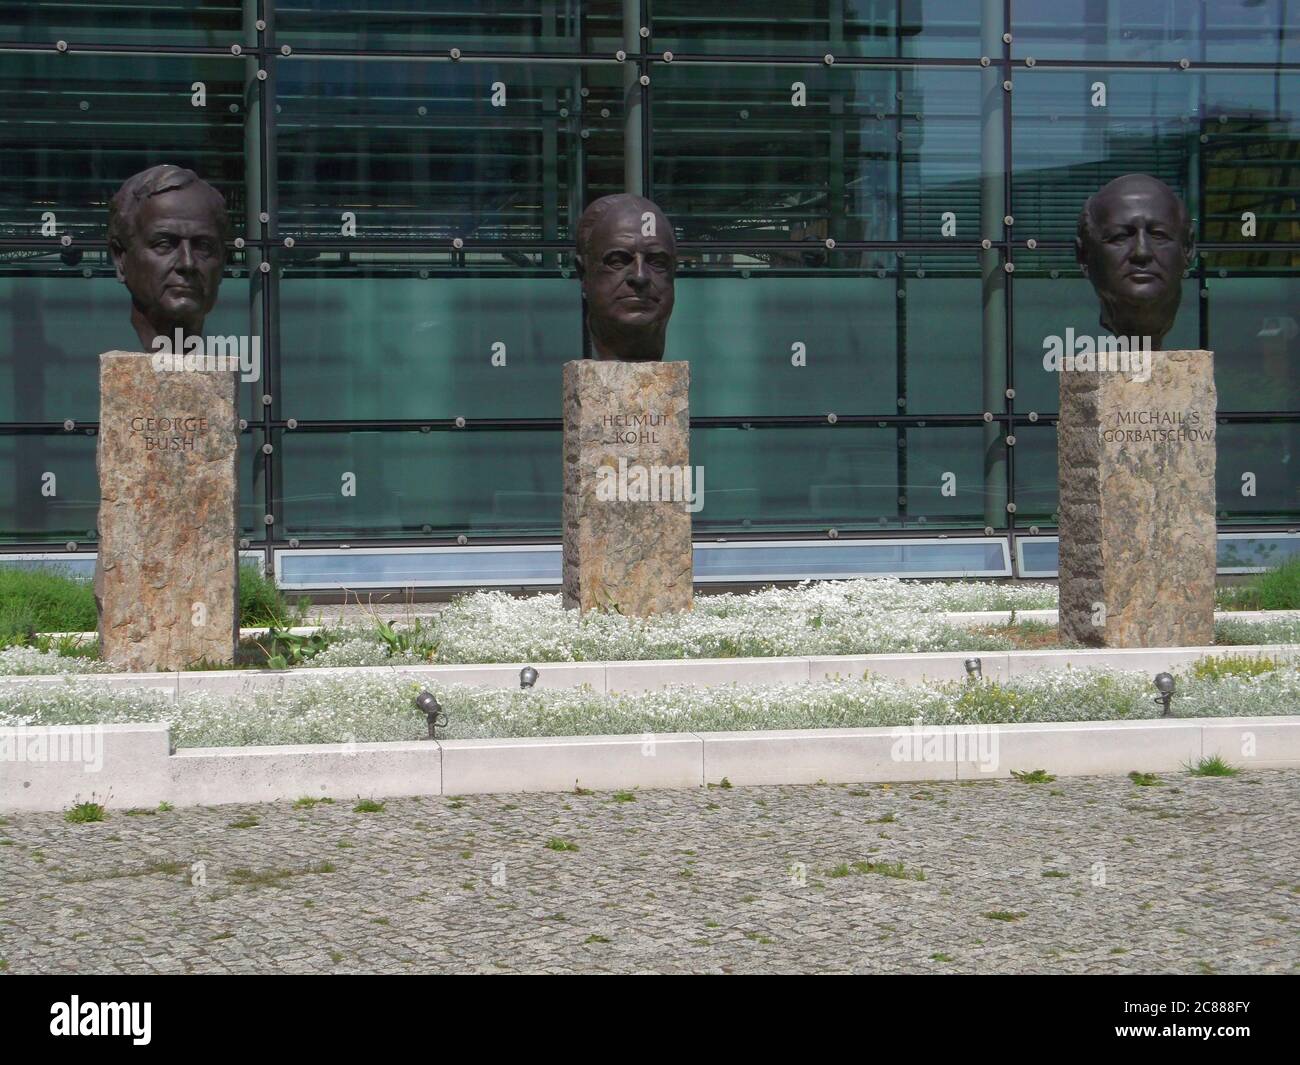 Denkmal für die 'Väter der Wiedervereinigung': Skulpturen von George Bush, Helmut Kohl, Michail Gorbatschow vor dem Gebäude des Axel-Springer-Verlags Foto Stock